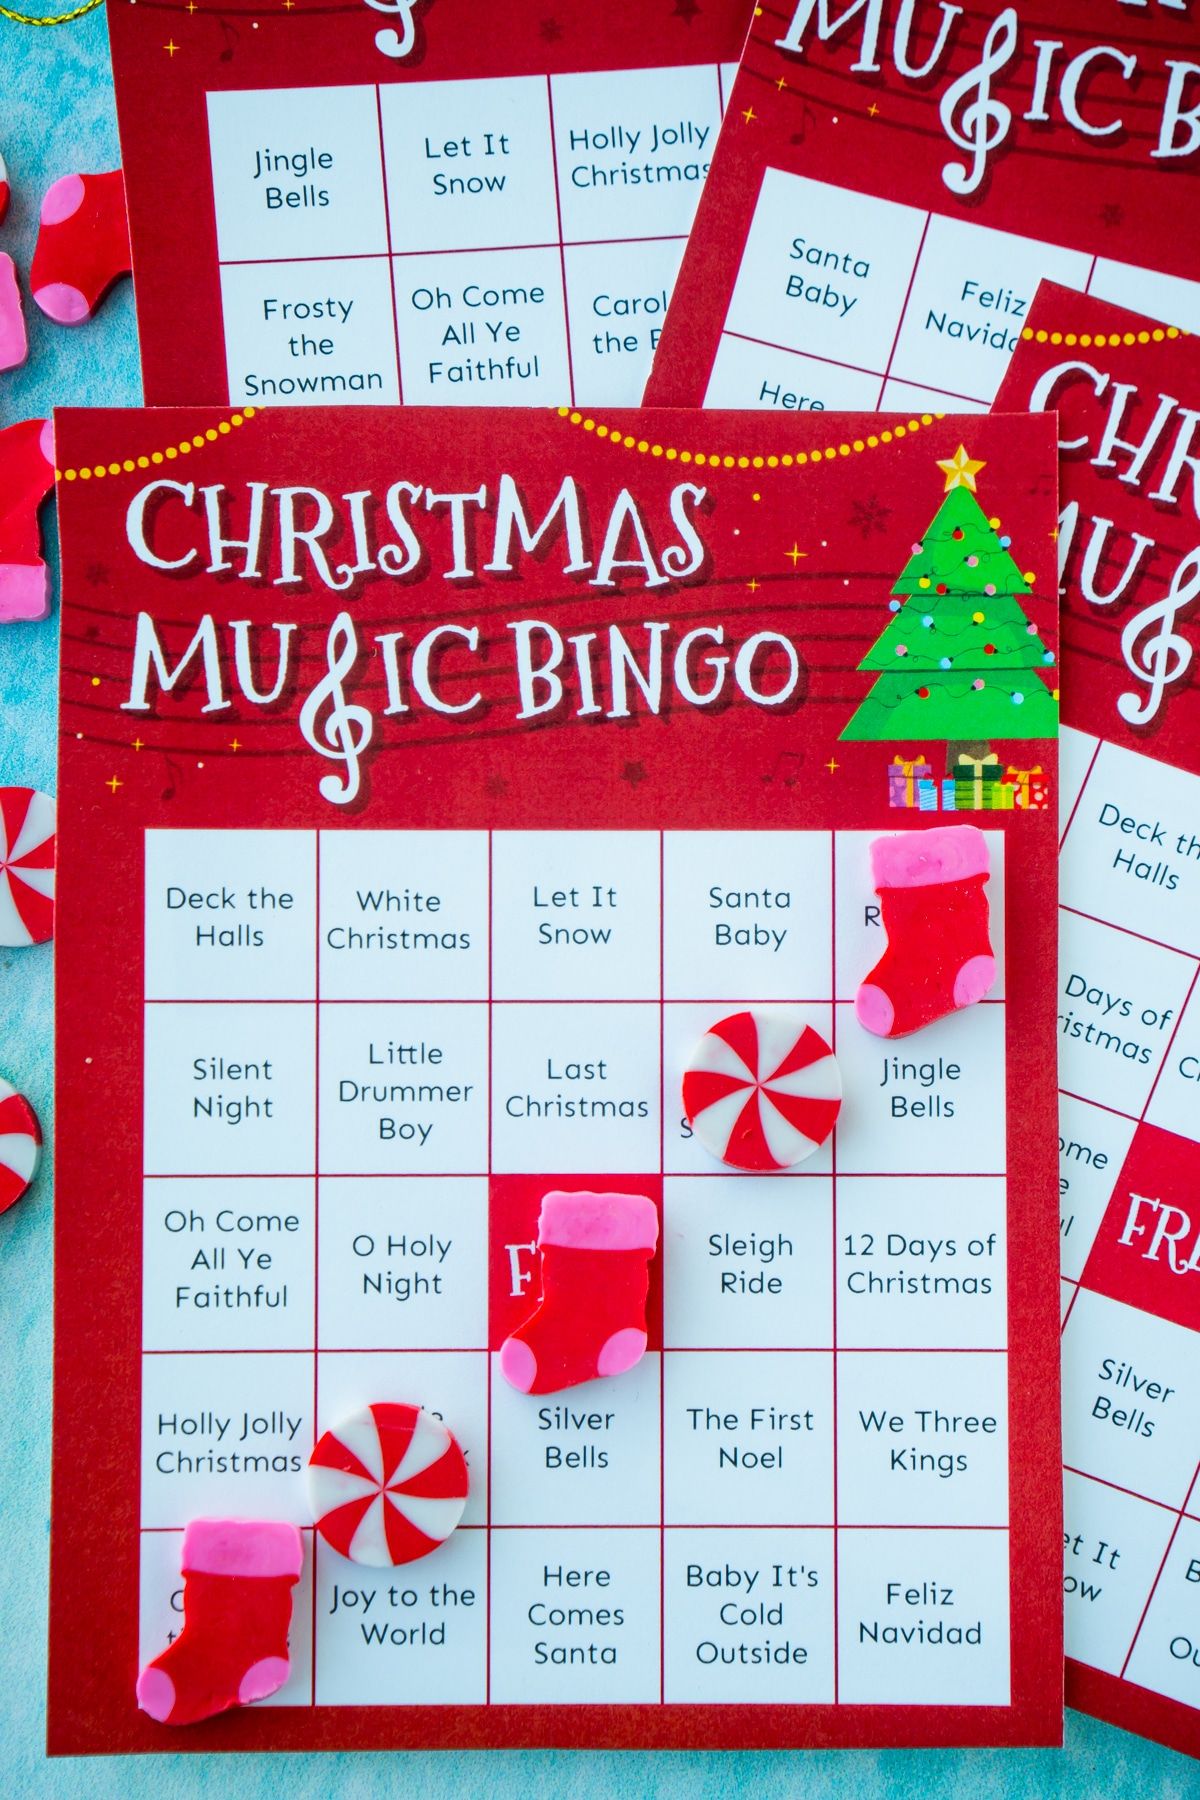 Targeta de bingo musical de Nadal amb un bingo fet amb gomes d